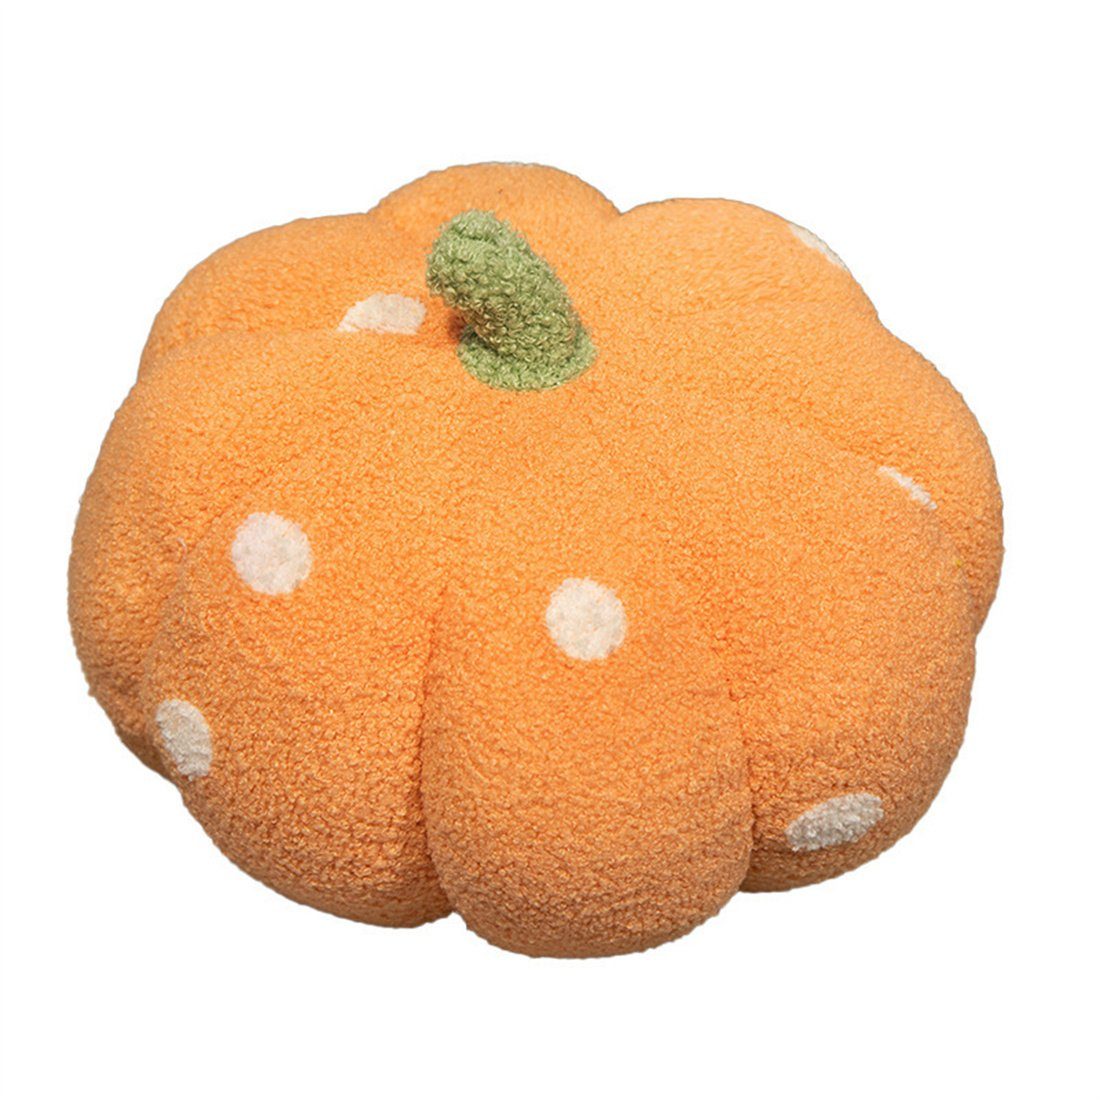 DÖRÖY Dekokissen Halloween gepunktetes Kürbis-Kissen, Party-Dekoration,Plüschtiere Bunt orange